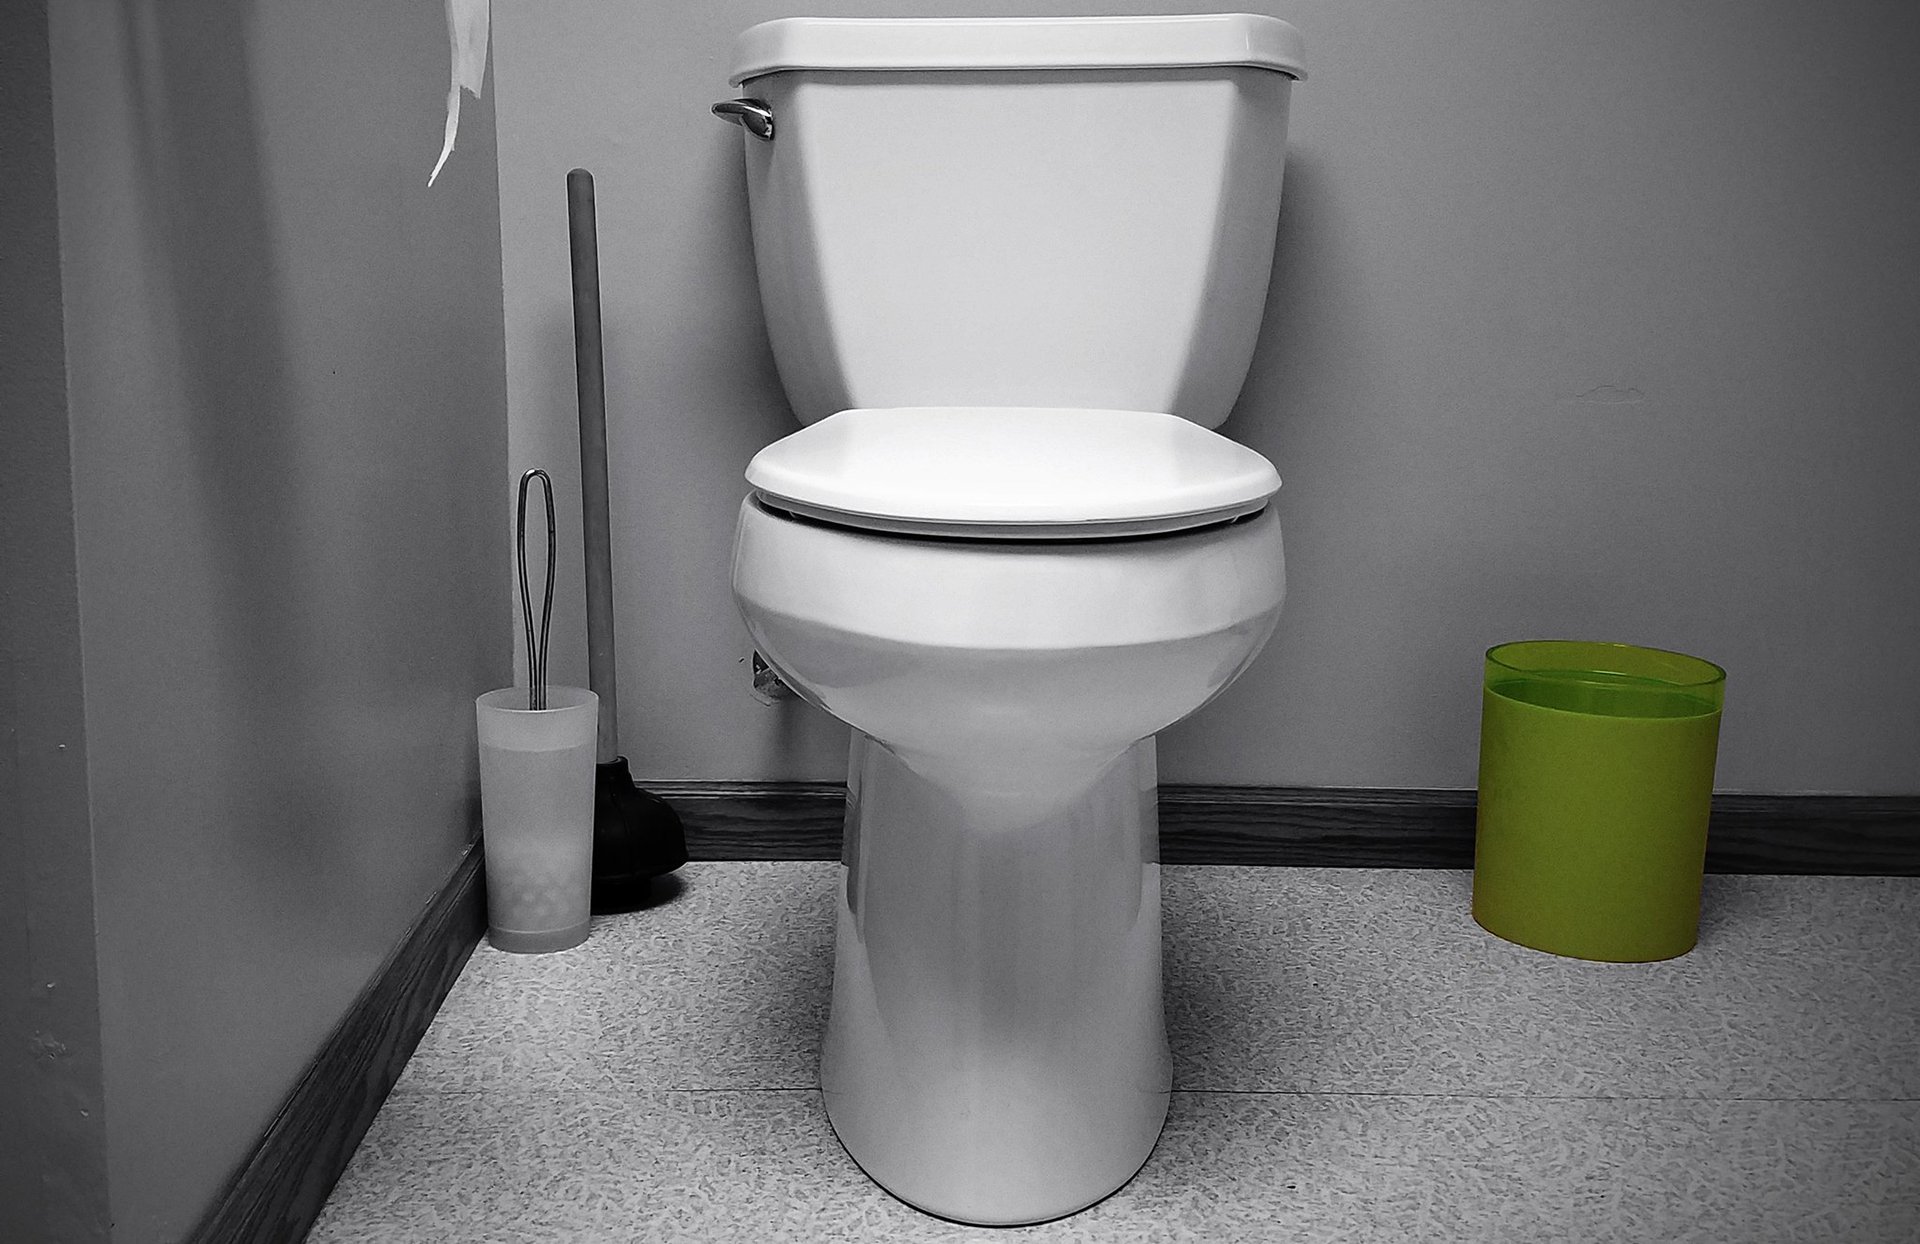 Photographie d'une toilette blanche typique nord-américaine